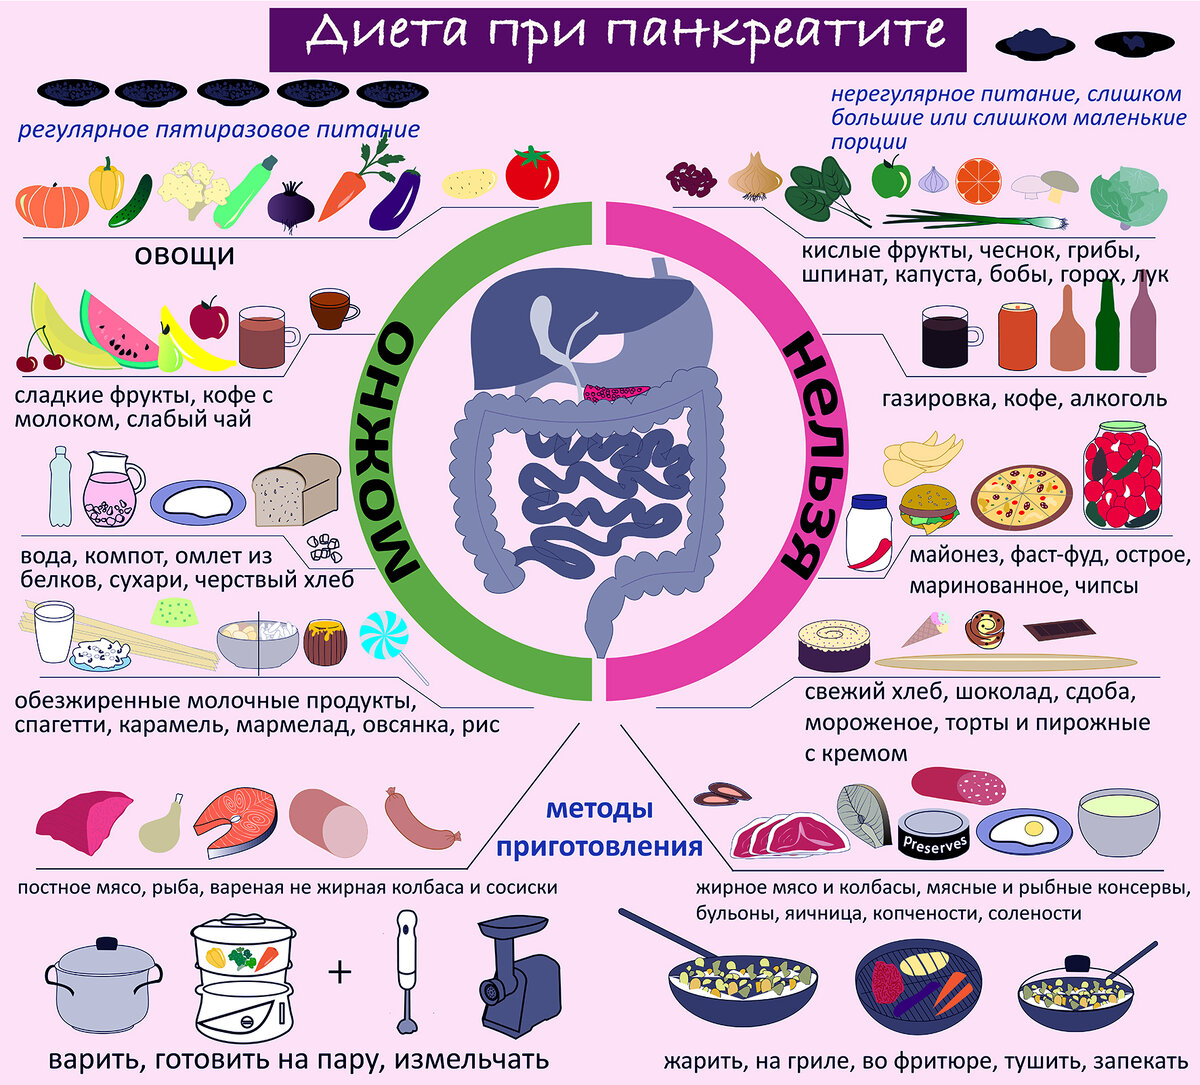 Питание при панкреатите: список продуктов +меню